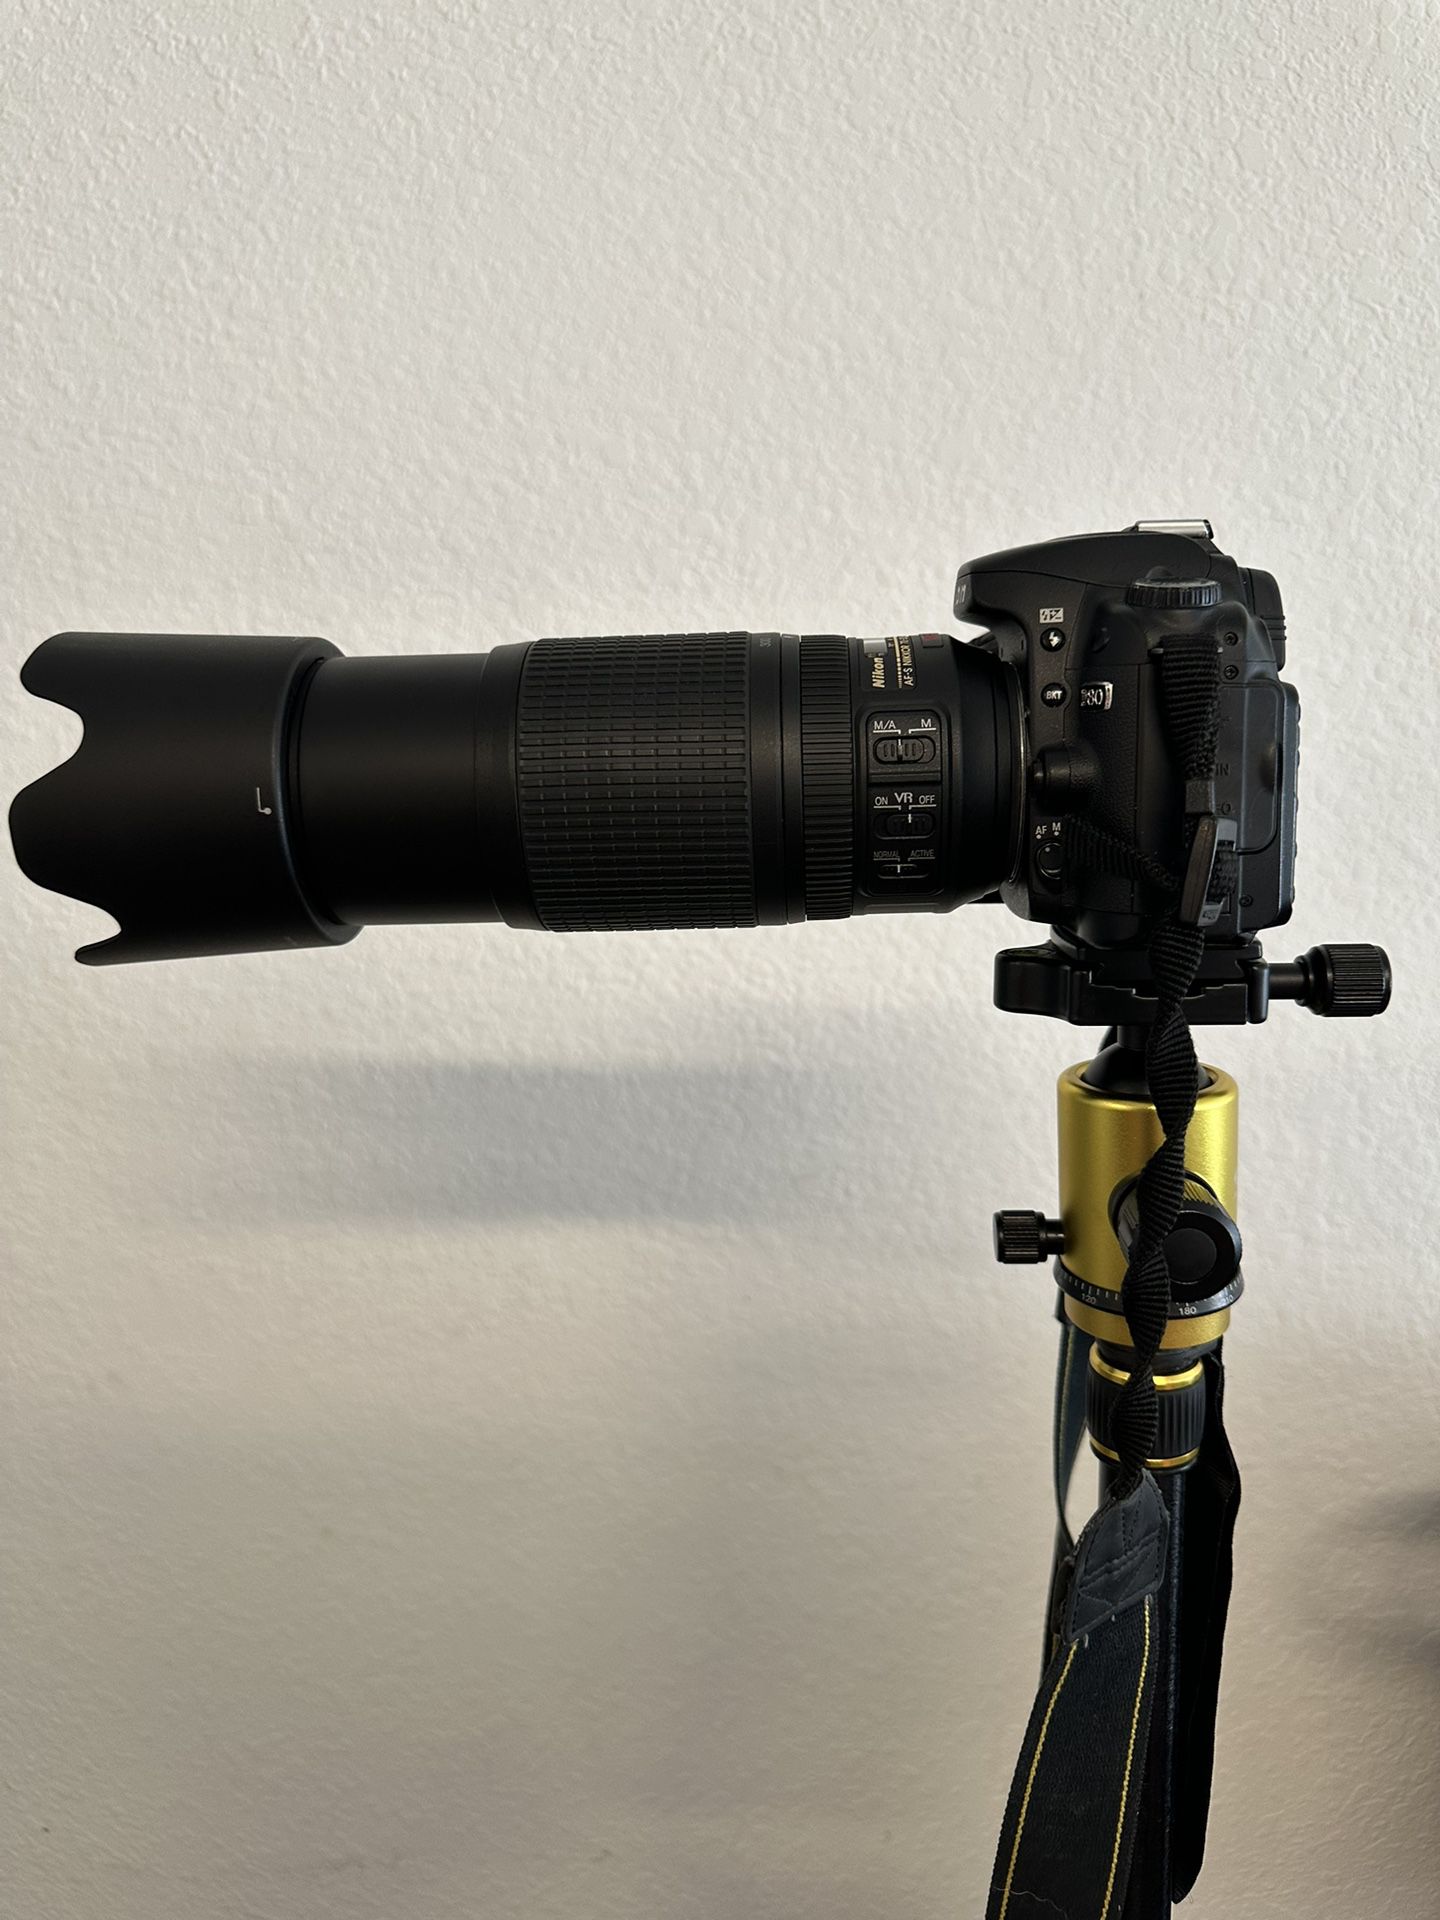 Nikon D80 photography Camera